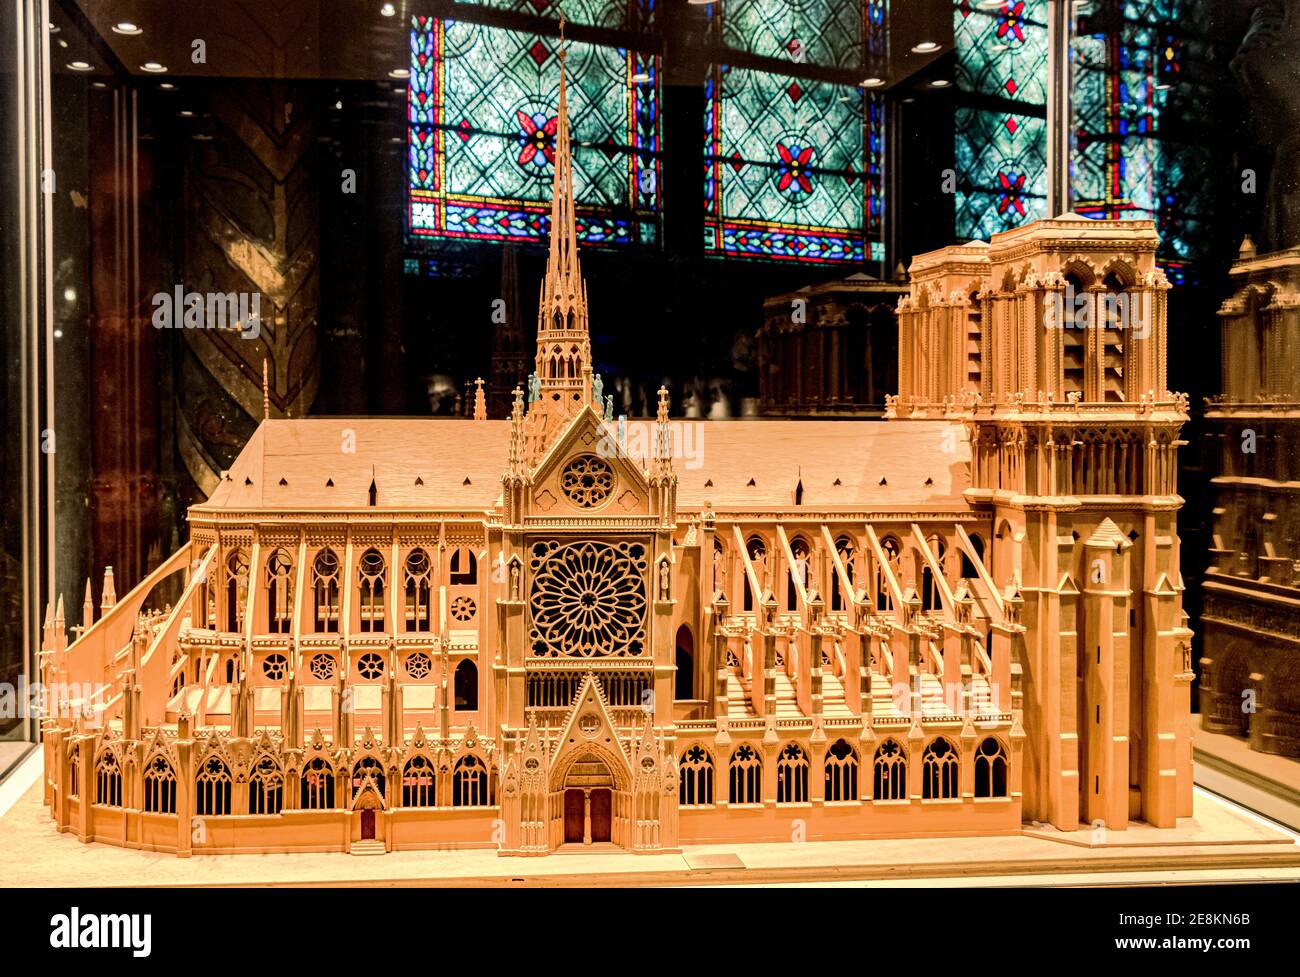 Ein hölzernes Architekturmodell von Notre Dame de Paris, das Befindet sich in der Kathedrale Notre Dame in Paris, Frankreich Stockfoto